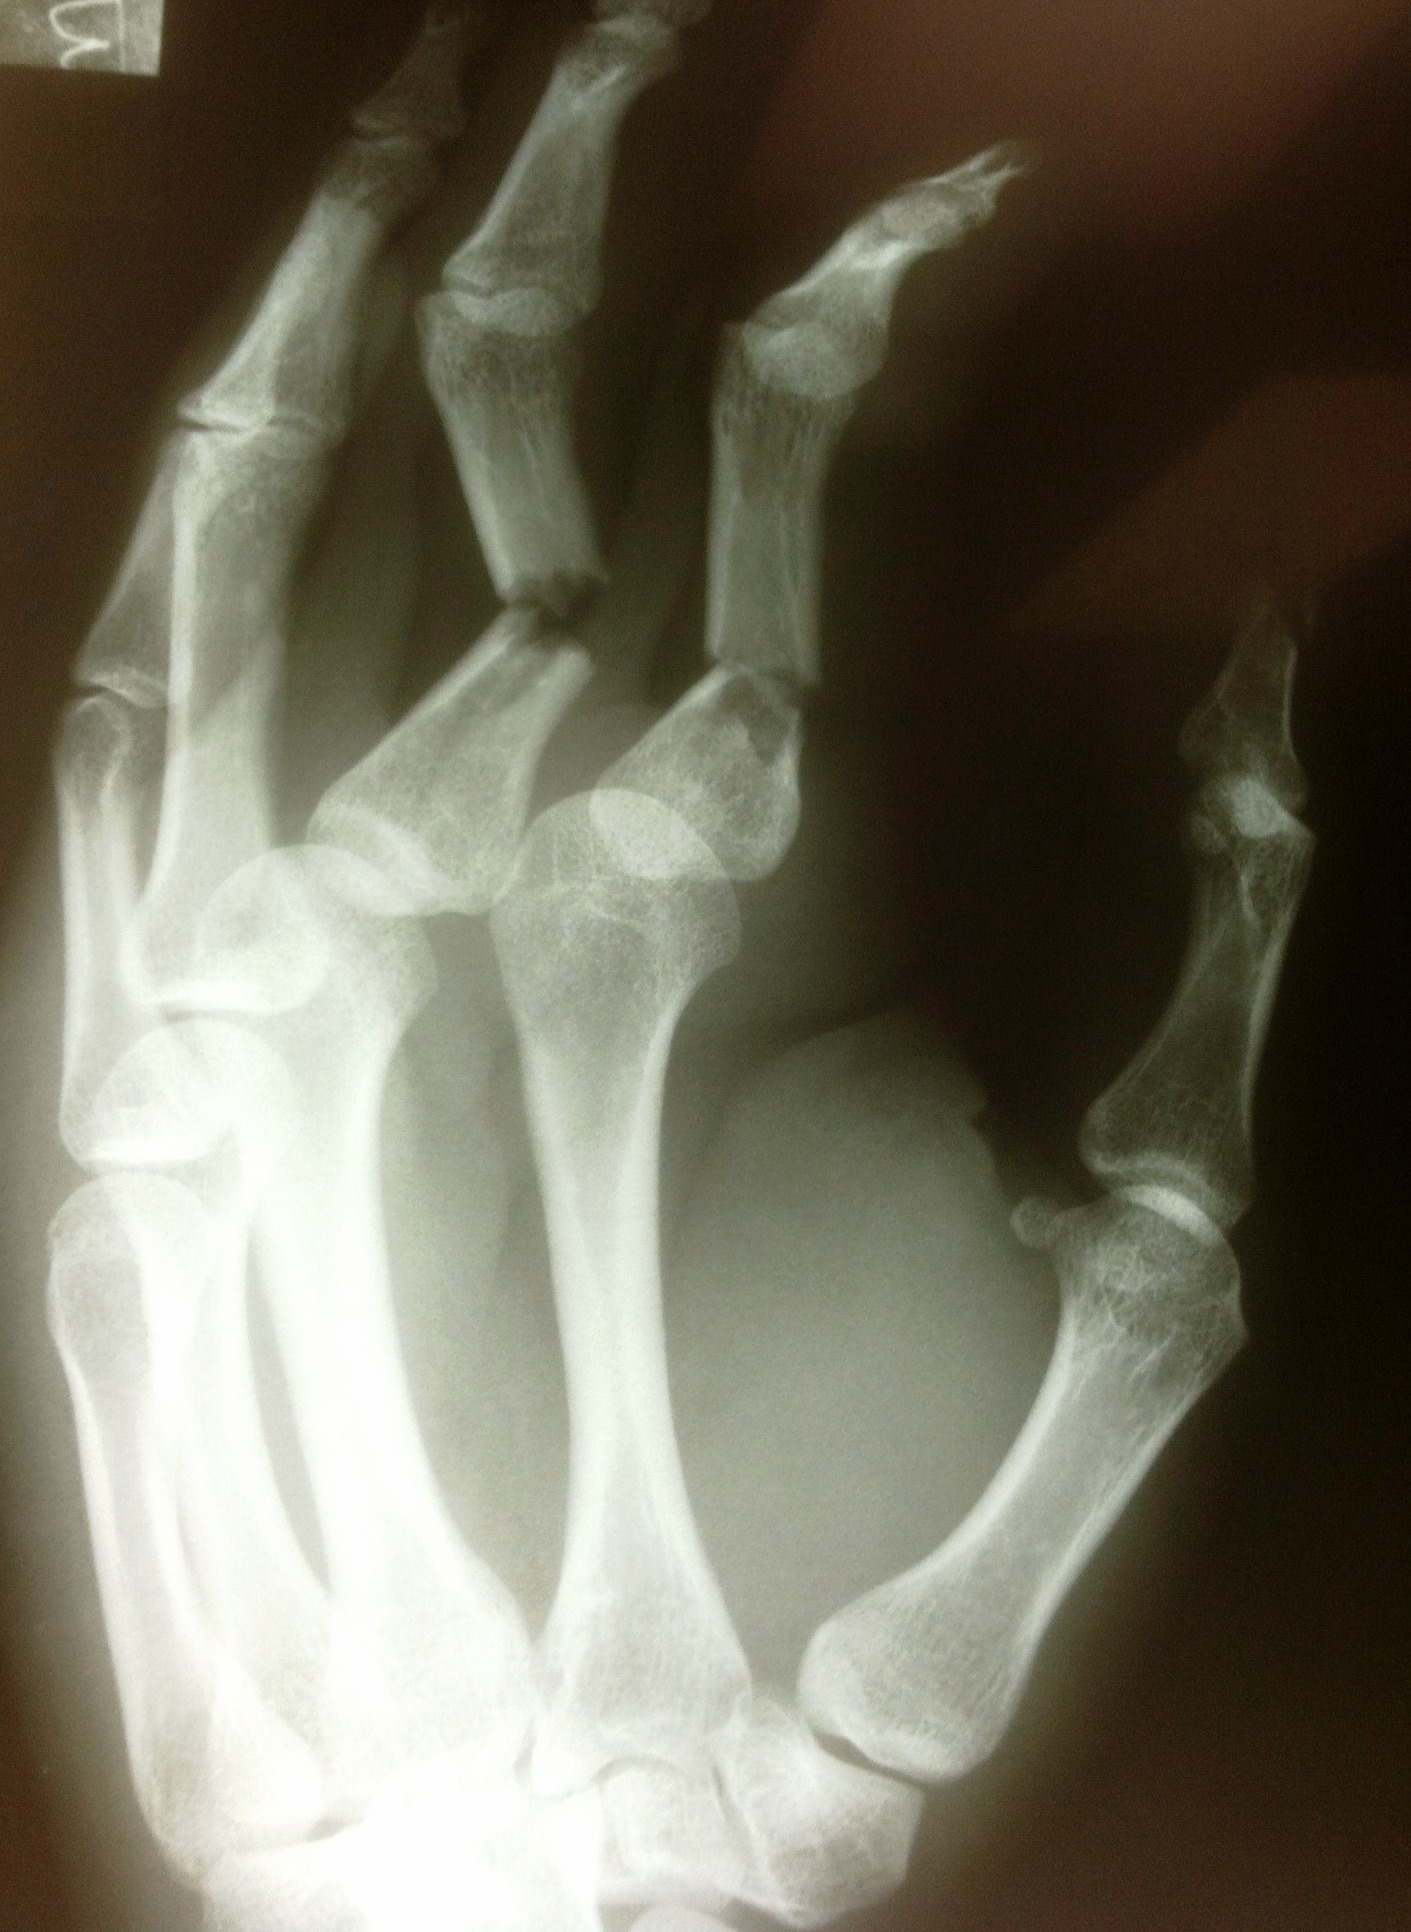 broken fingers